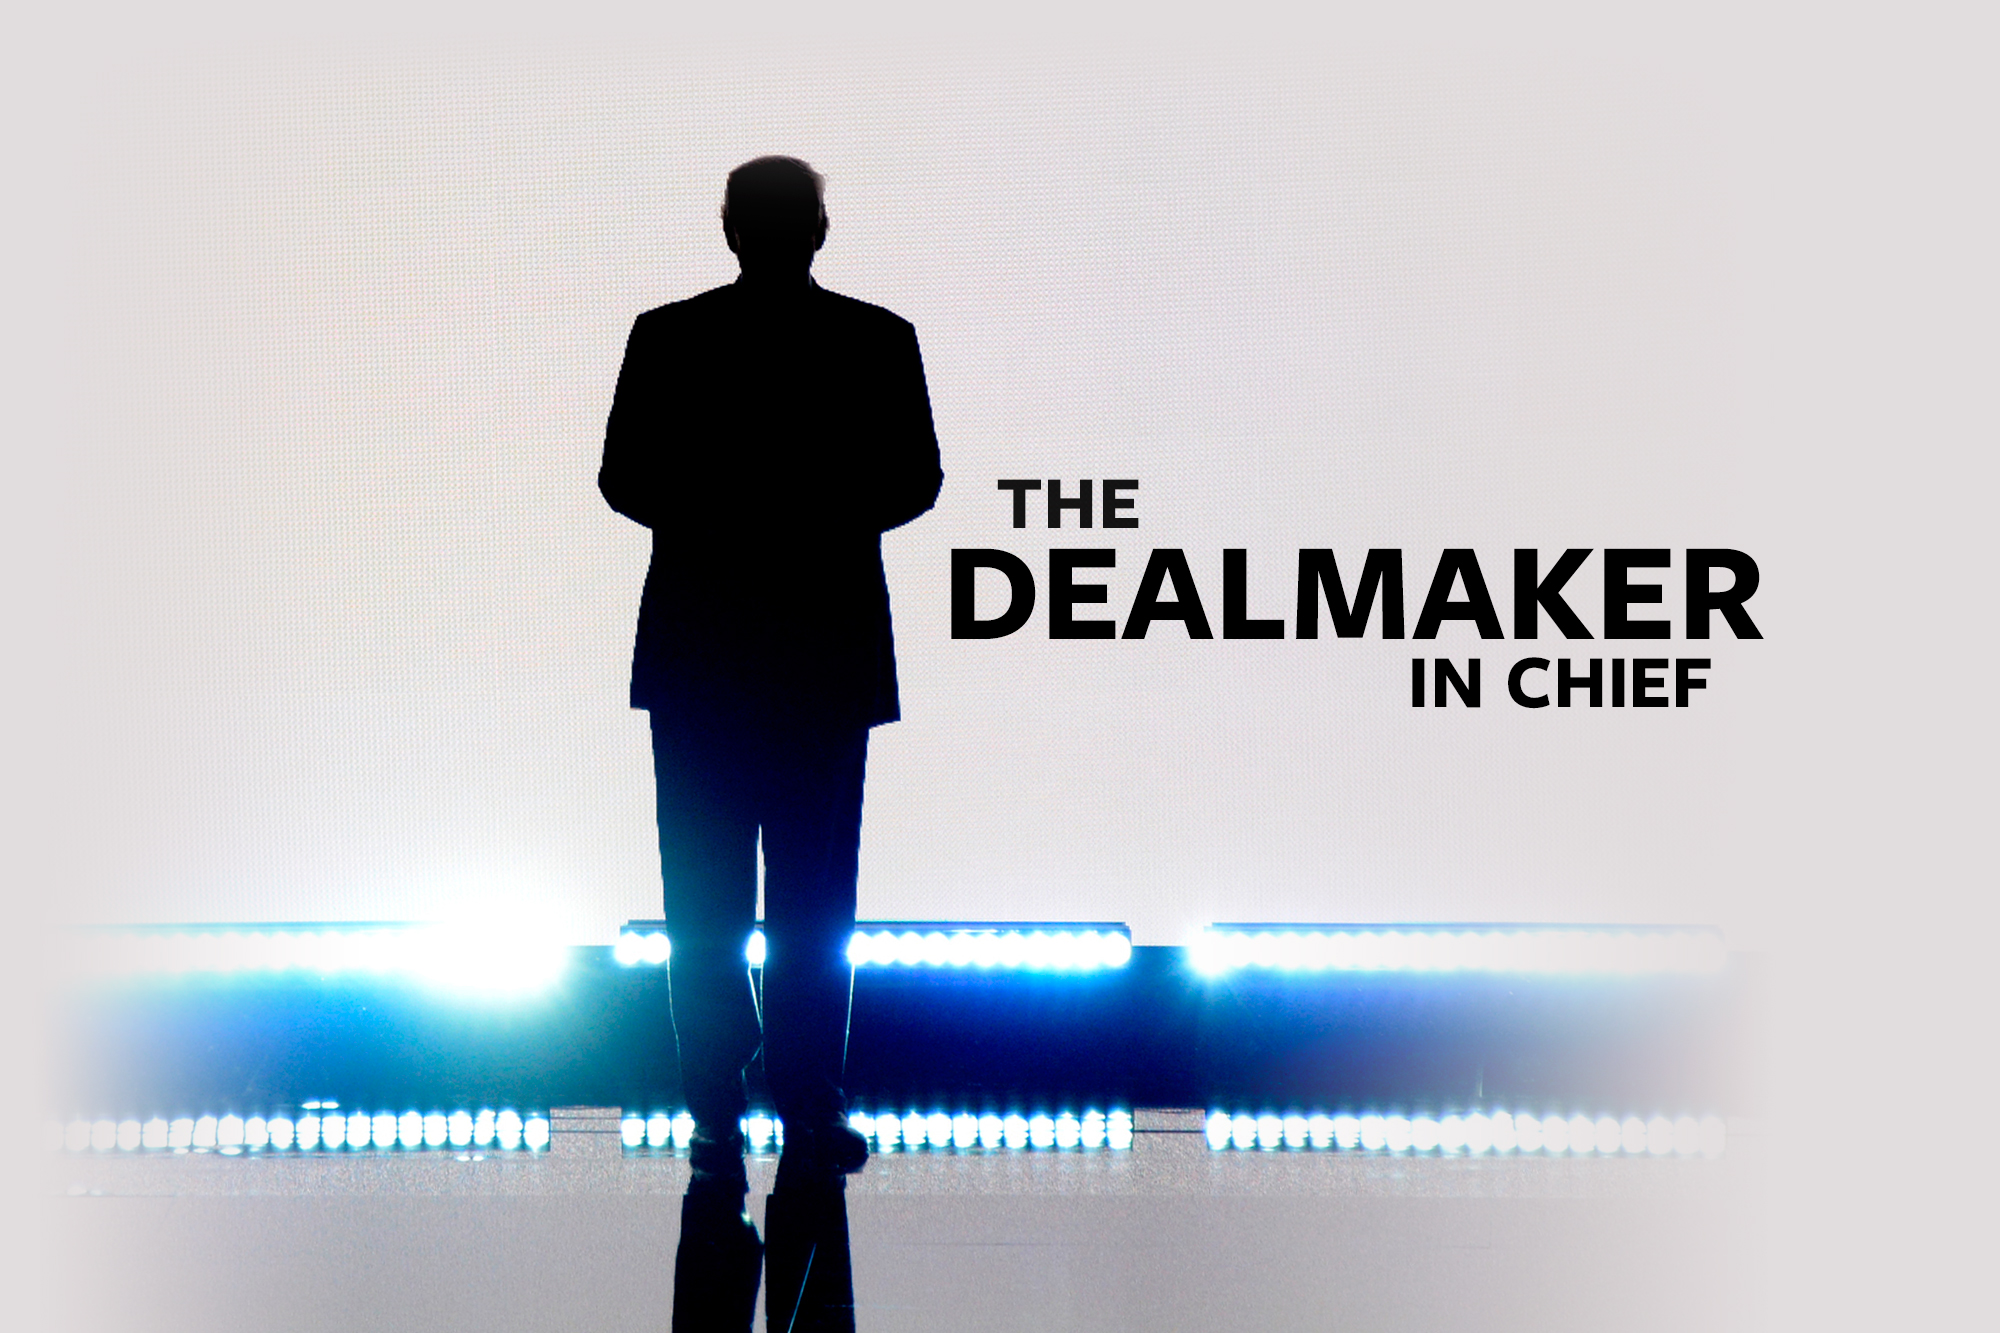 Dealmaker. Highest dealmaker. Deal maker